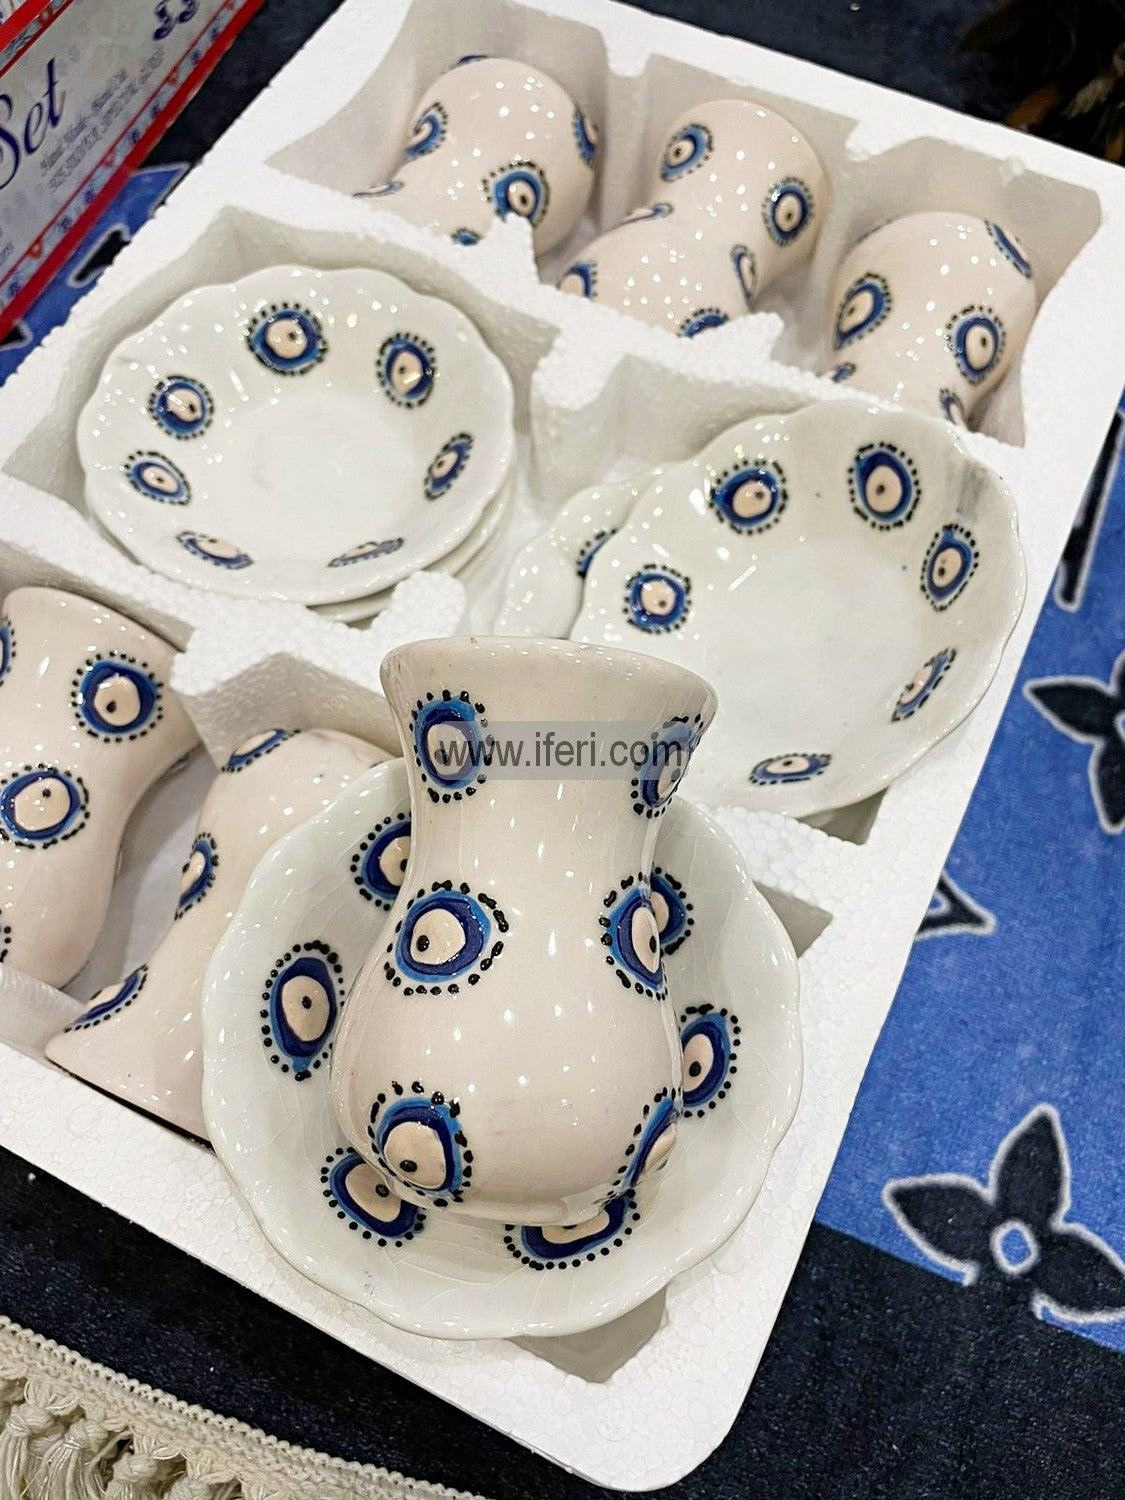 12 Pcs Turkish Hand Printed Ceramic Tea Cup & Saucer Set